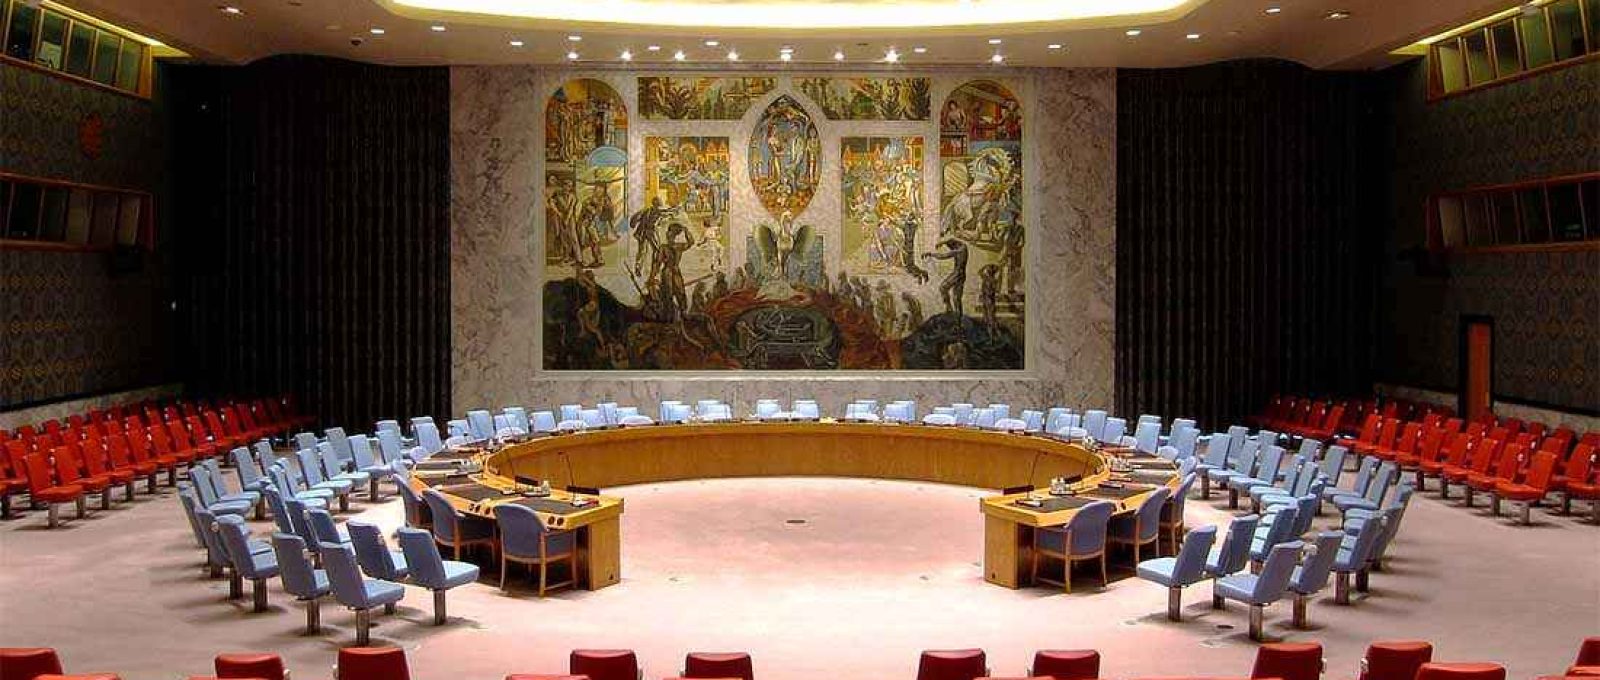 Sala de reuniões do Conselho de Segurança da ONU na sede das Nações Unidas em Nova York, EUA, em fotografia de 2014 (Foto: Neptuul/Wikimedia Commons/CC BY-SA 3.0).